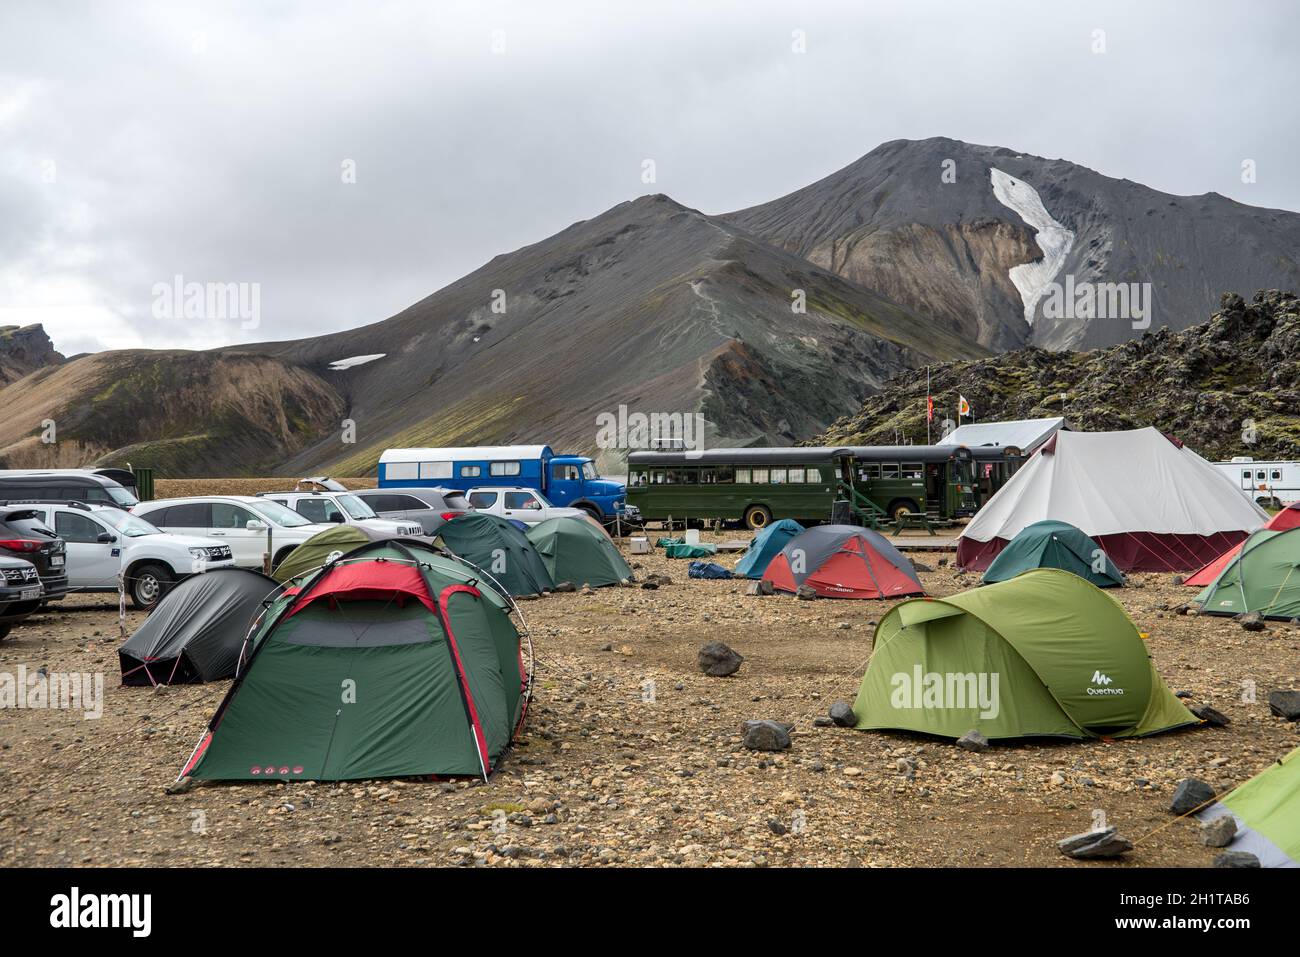 Landmannalaugar, Islande - 30 juillet 2017 : camp de tourisme dans les montagnes volcaniques de Landmannalaugar dans la réserve naturelle de Fjallabak. Islande Banque D'Images